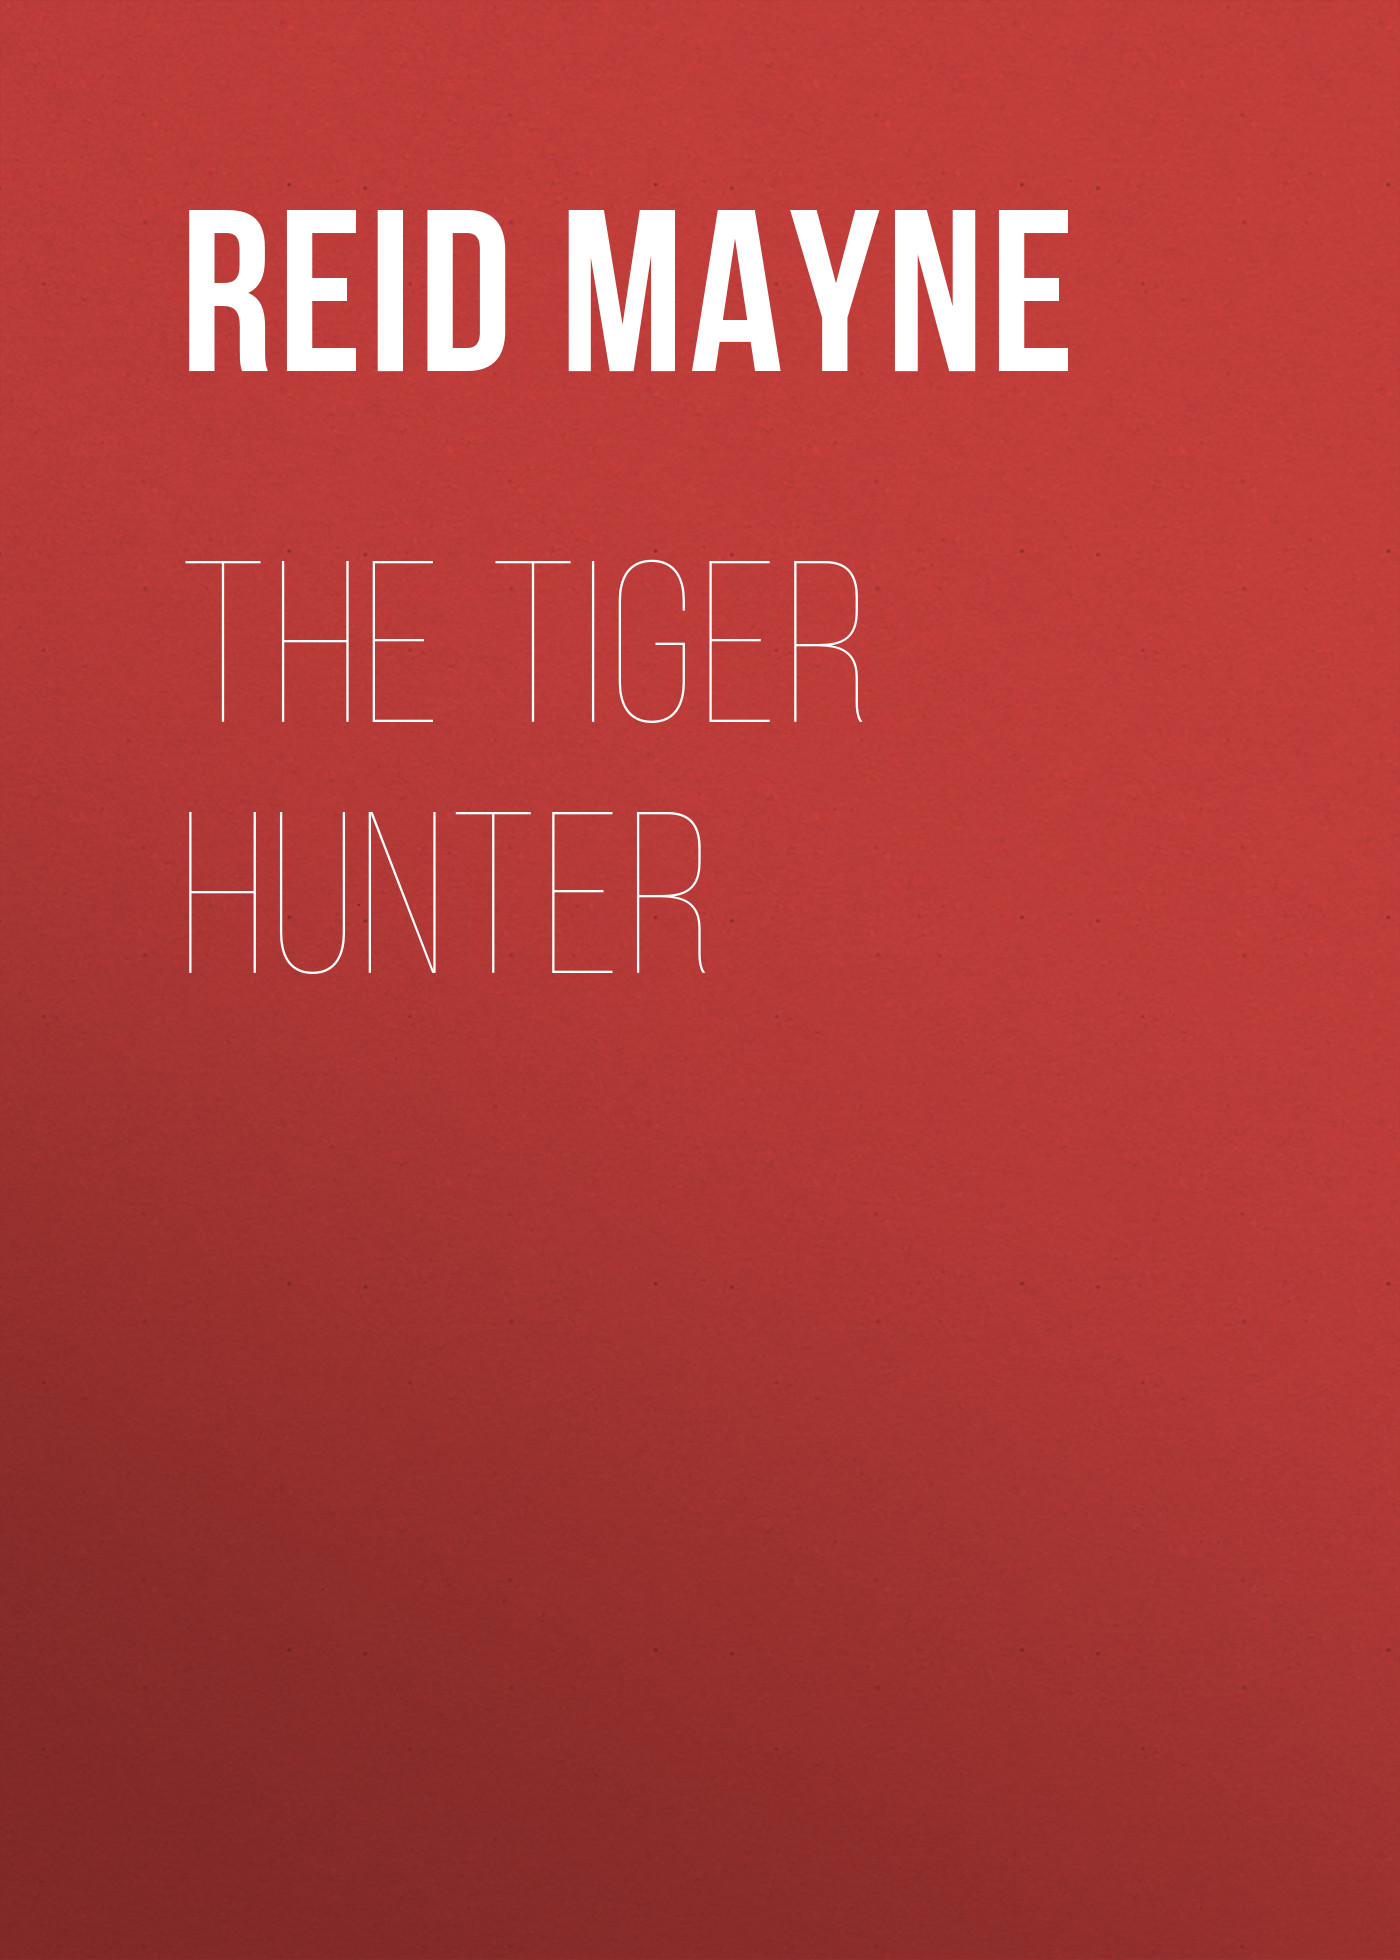 Книга The Tiger Hunter из серии , созданная Mayne Reid, может относится к жанру История, Литература 19 века, Зарубежная старинная литература, Зарубежная классика. Стоимость электронной книги The Tiger Hunter с идентификатором 25451492 составляет 0 руб.